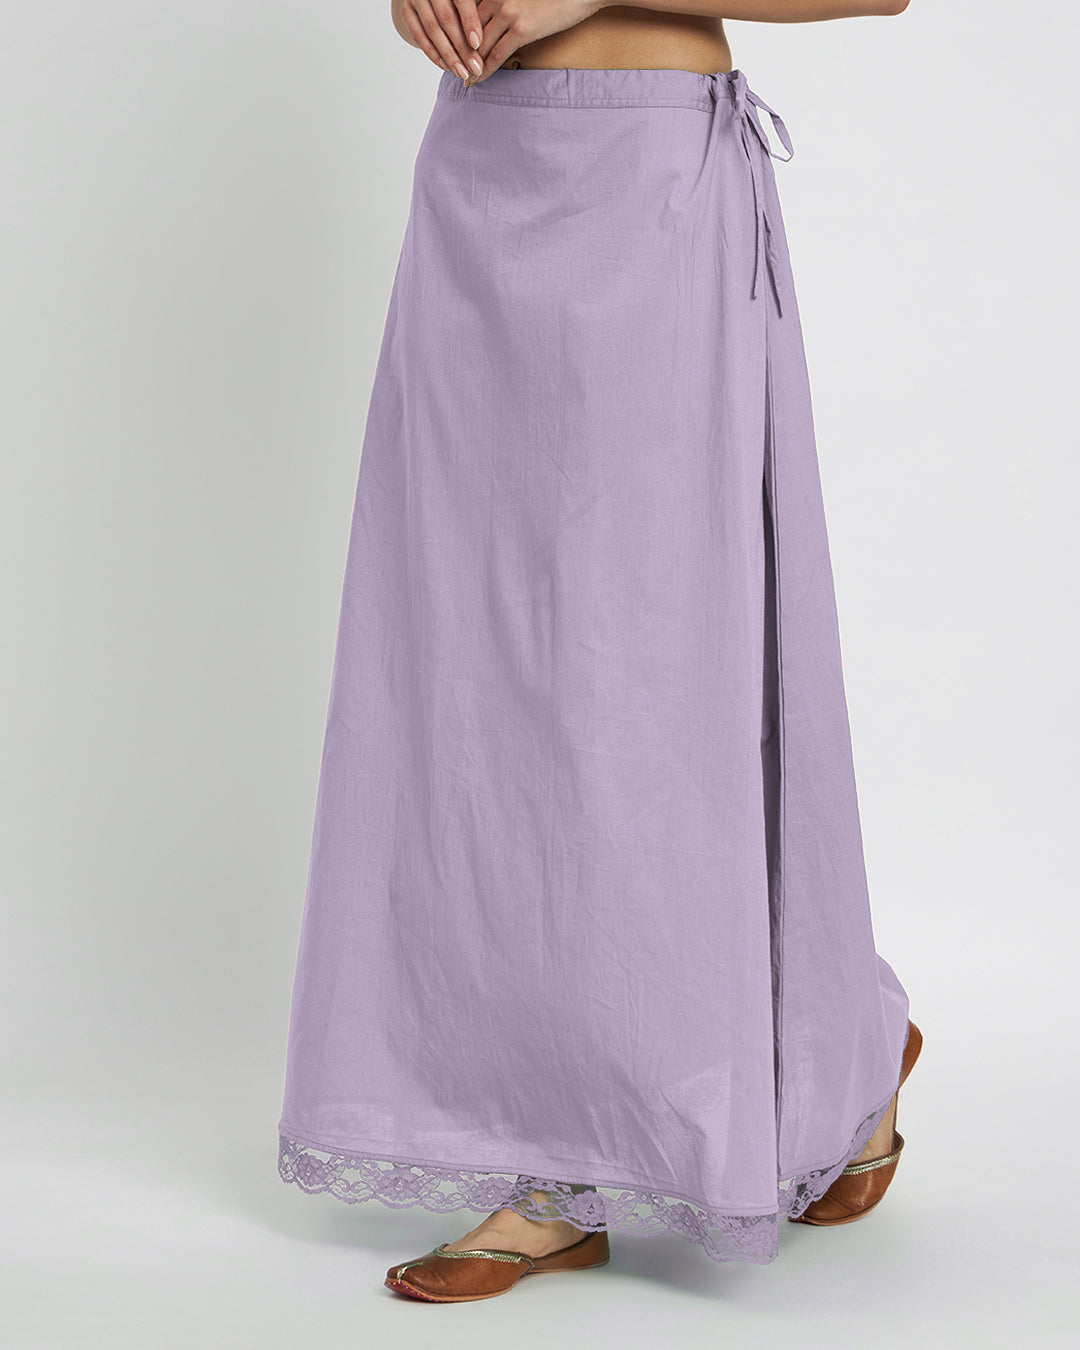 Lilac Lace Medley Peekaboo Petticoat